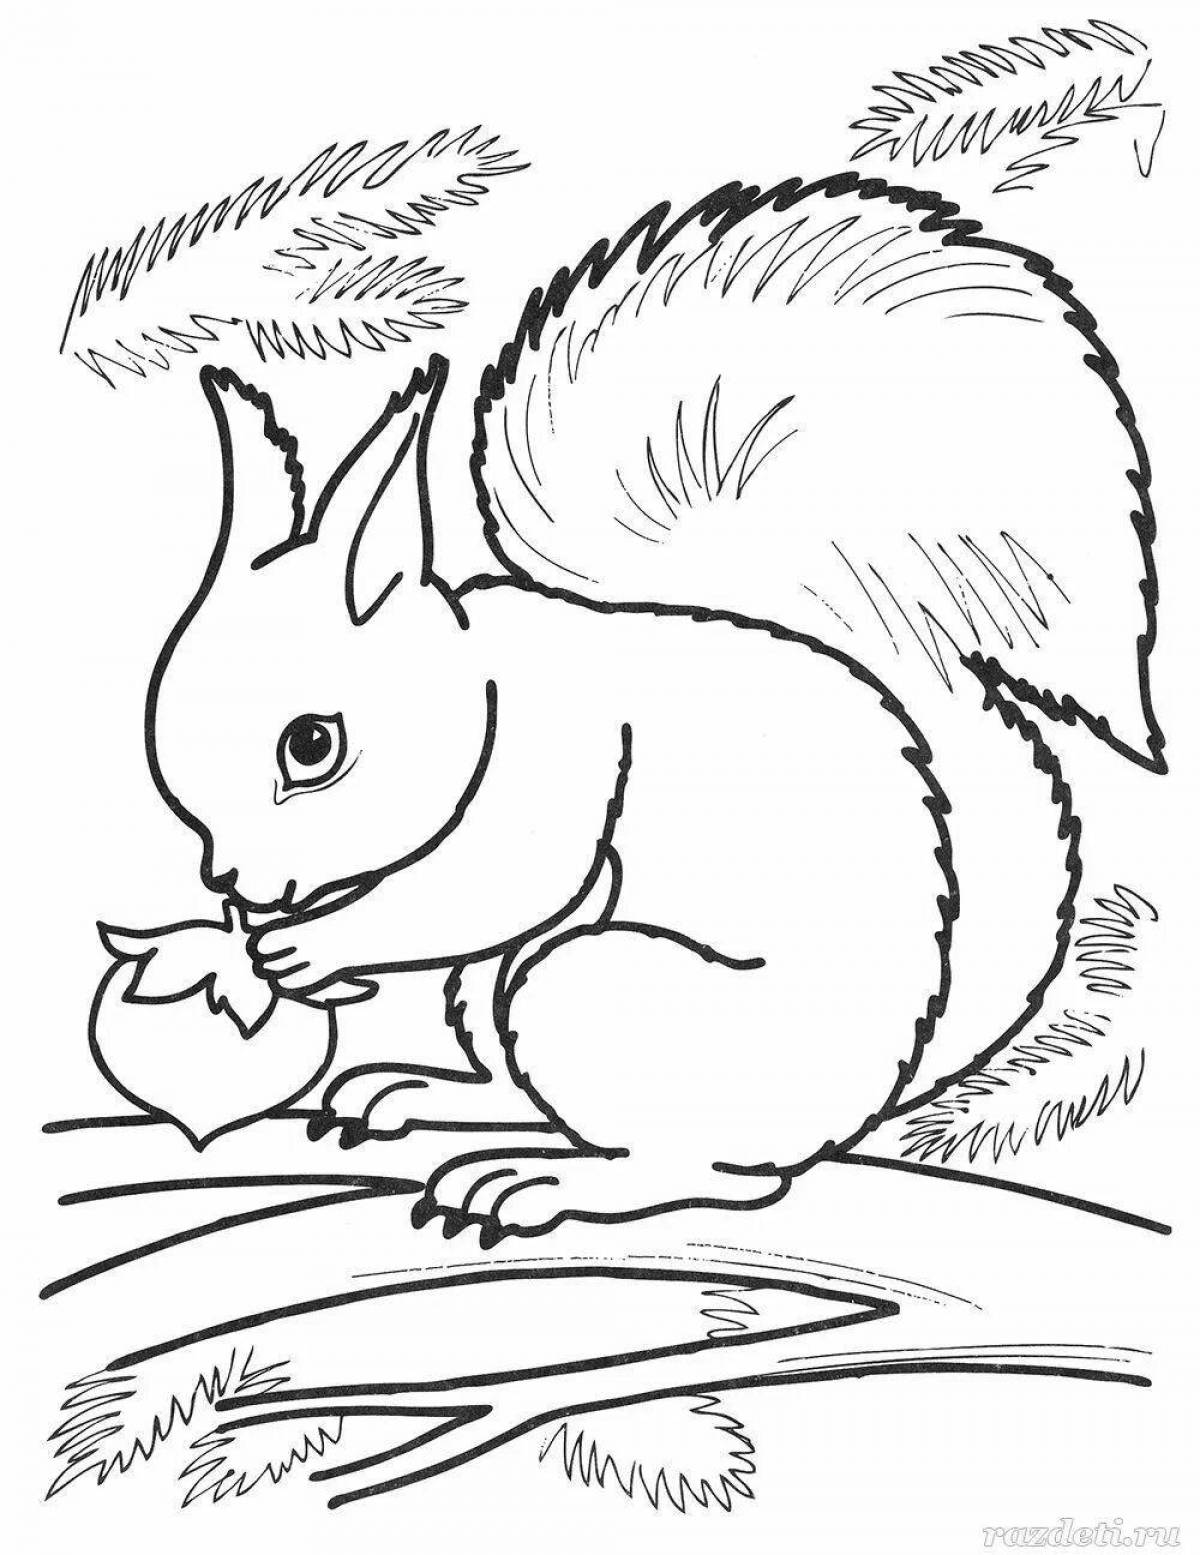 Adorable winter squirrel coloring page